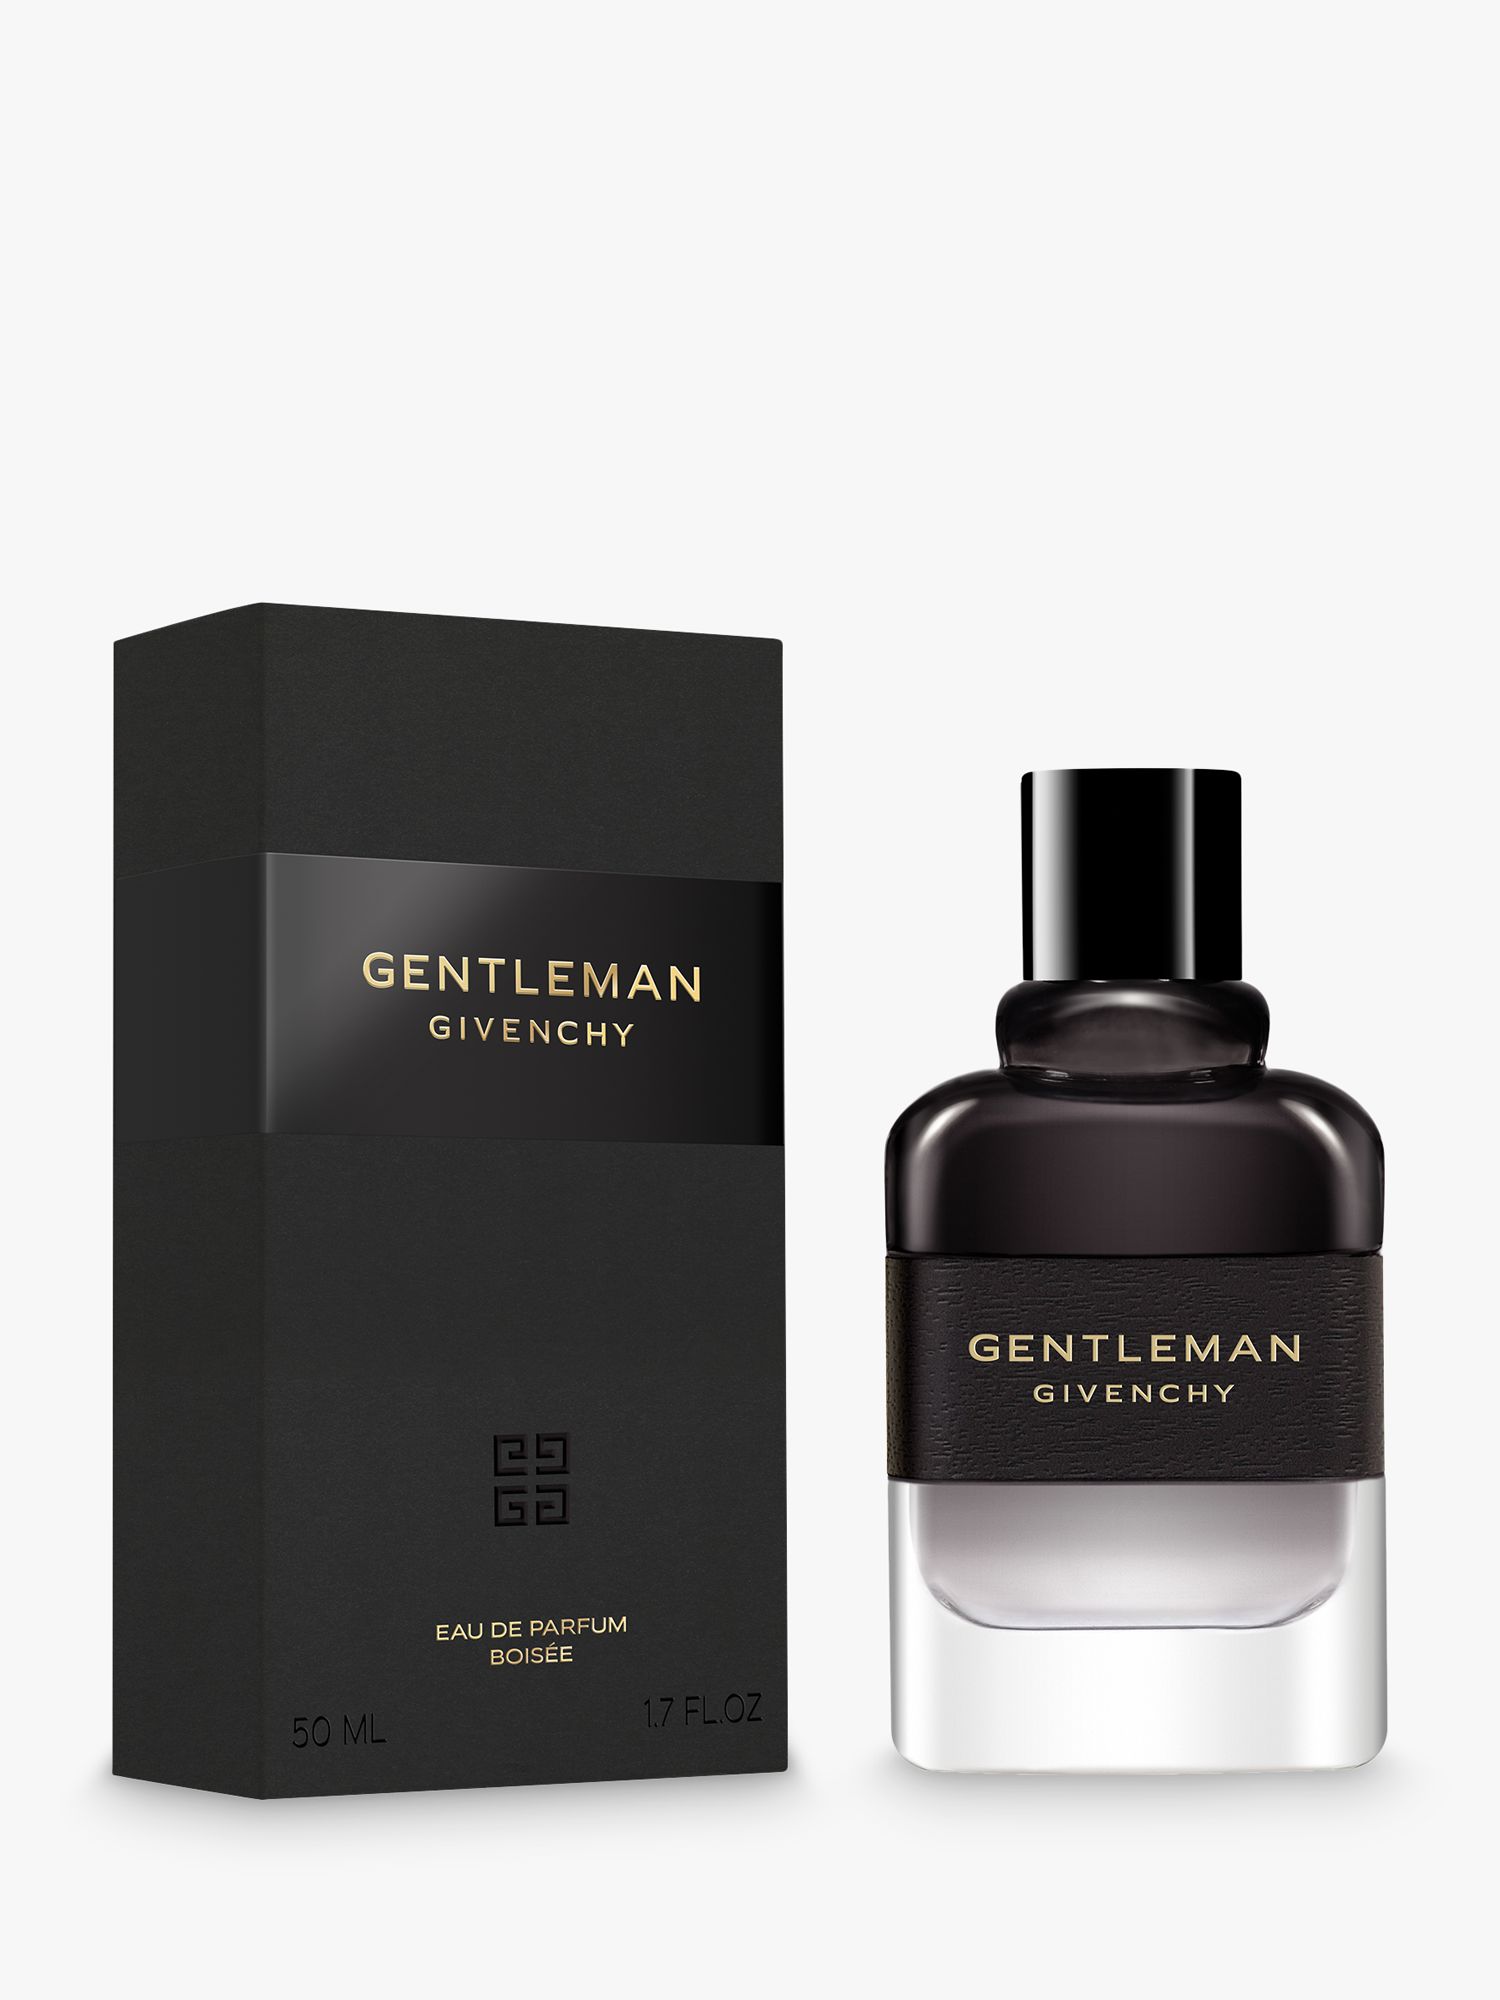 Givenchy Gentleman Eau de Parfum Boisée 